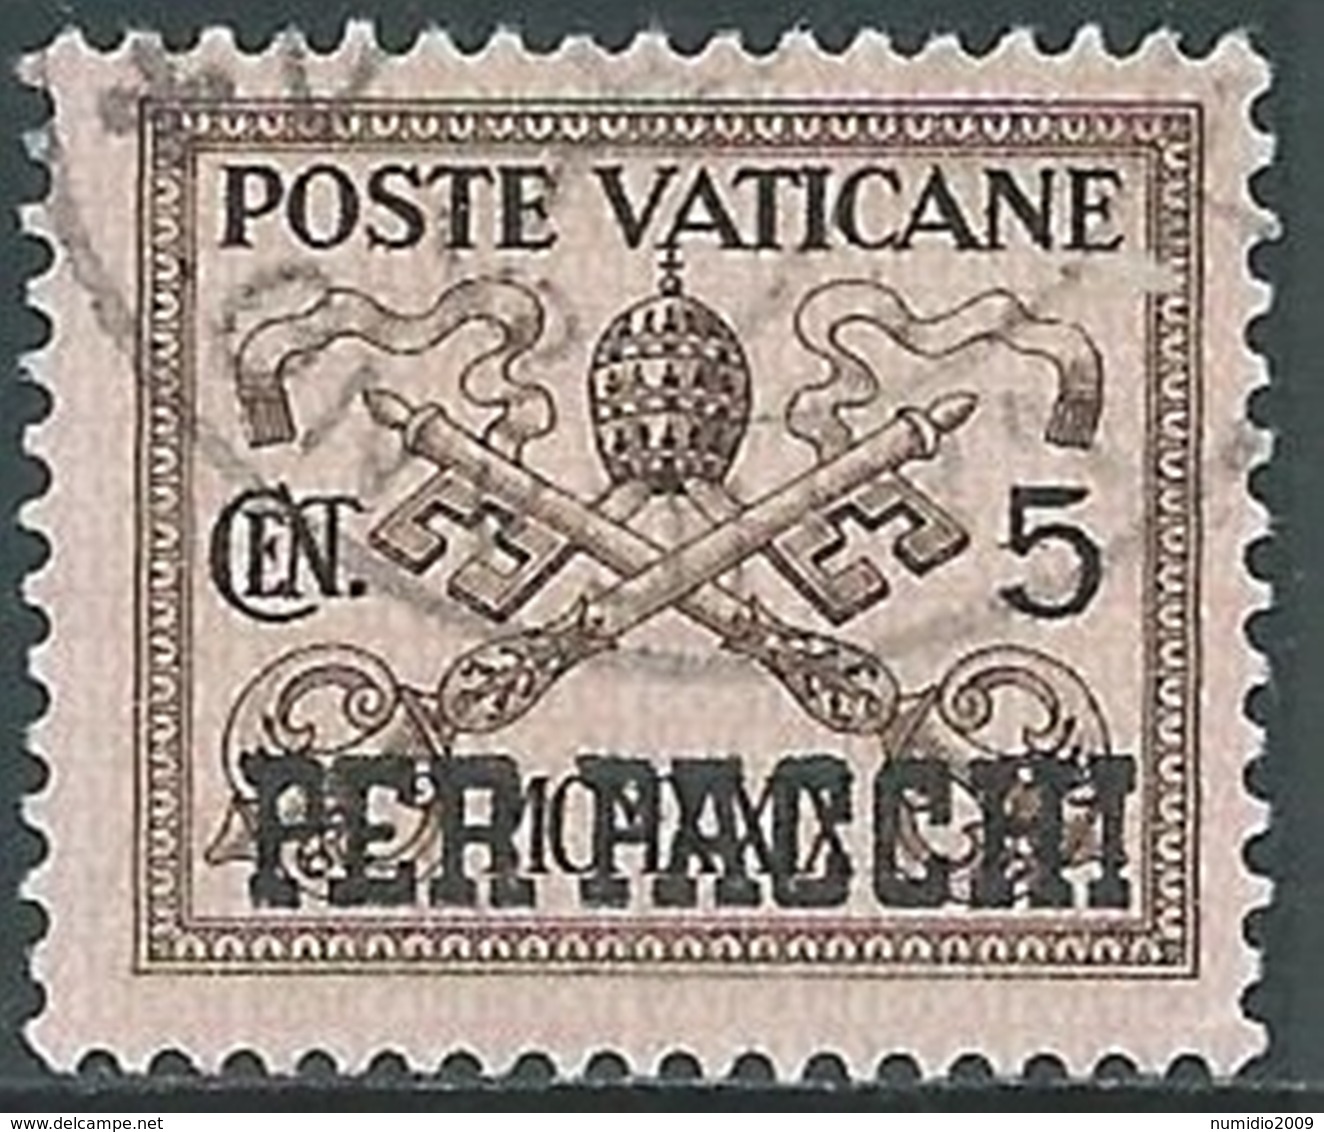 1931 VATICANO USATO PACCHI POSTALI 5 CENT - RB20 - Paketmarken